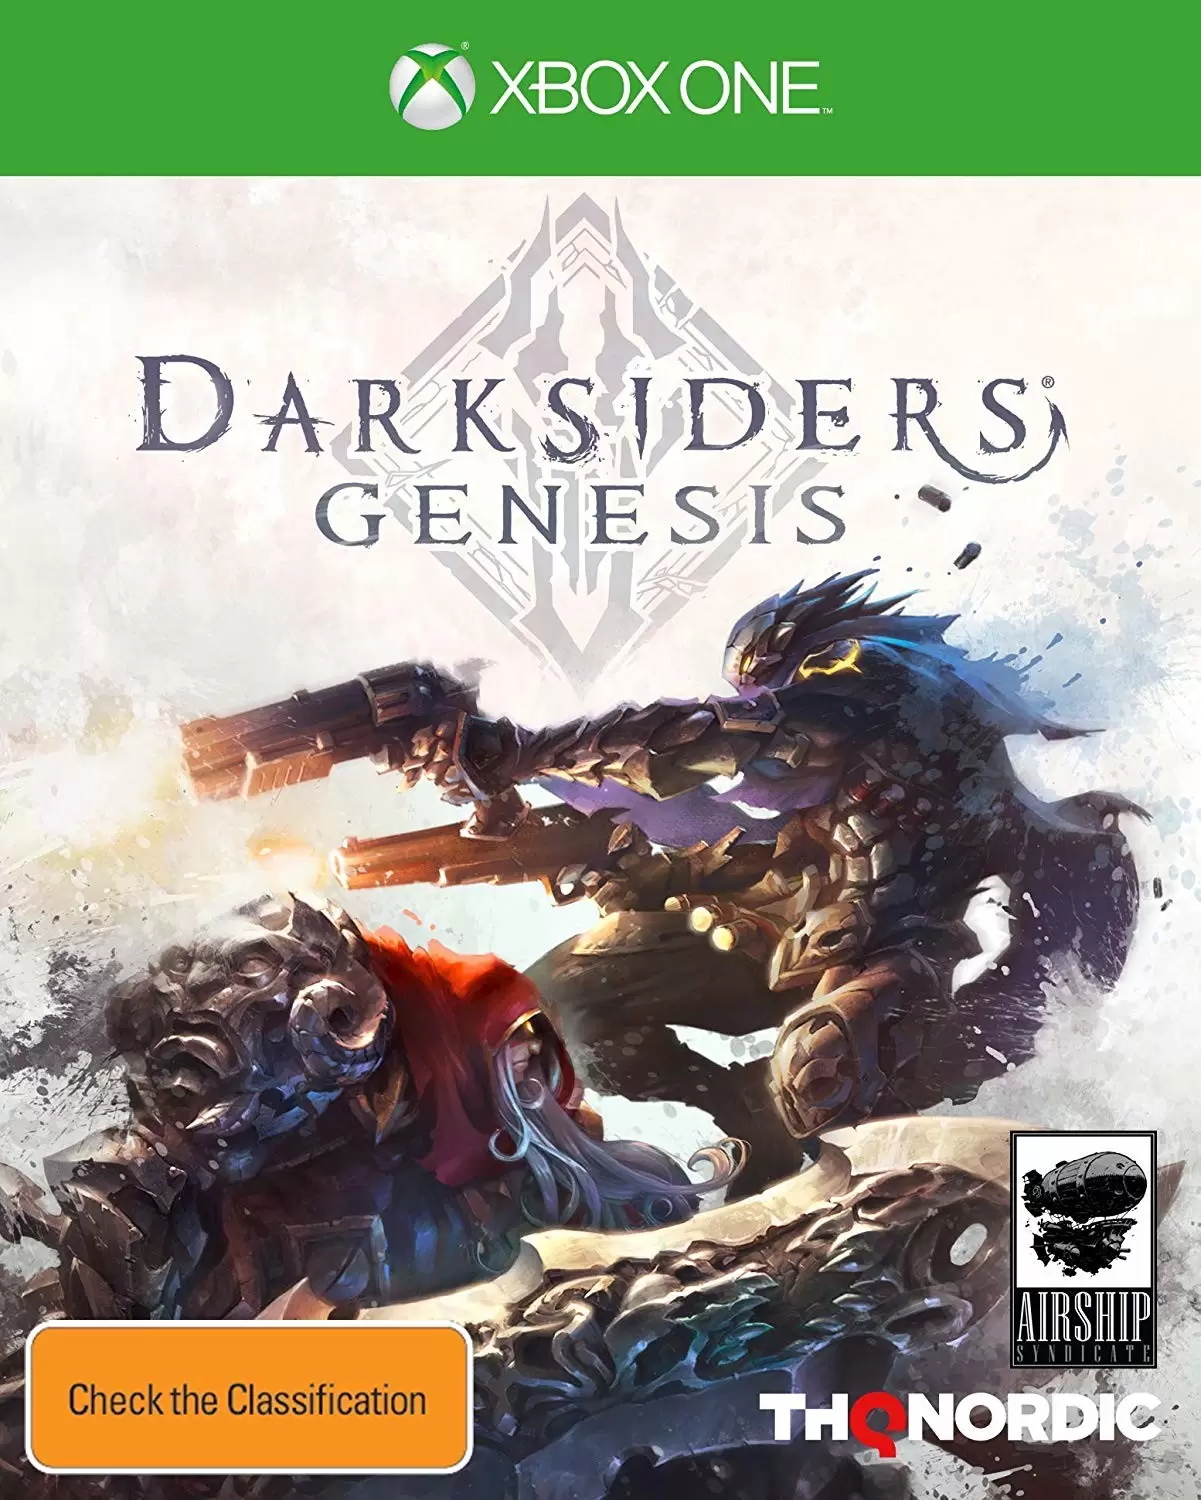 XBOX One Games - Darksiders Genesis